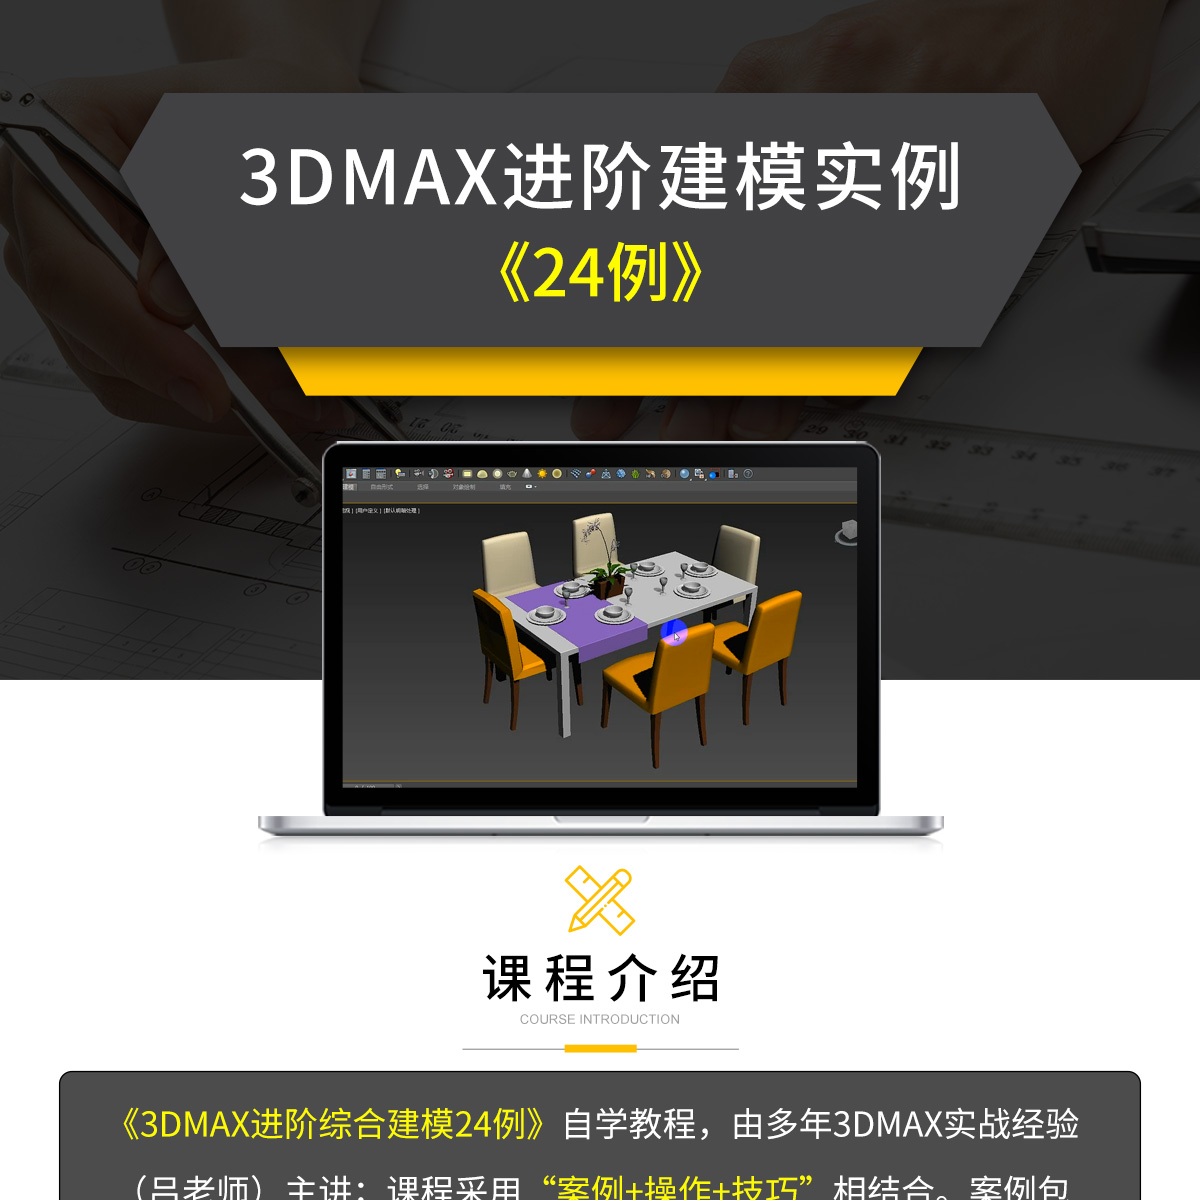 付费系列模板（3DMAX）_01.jpg